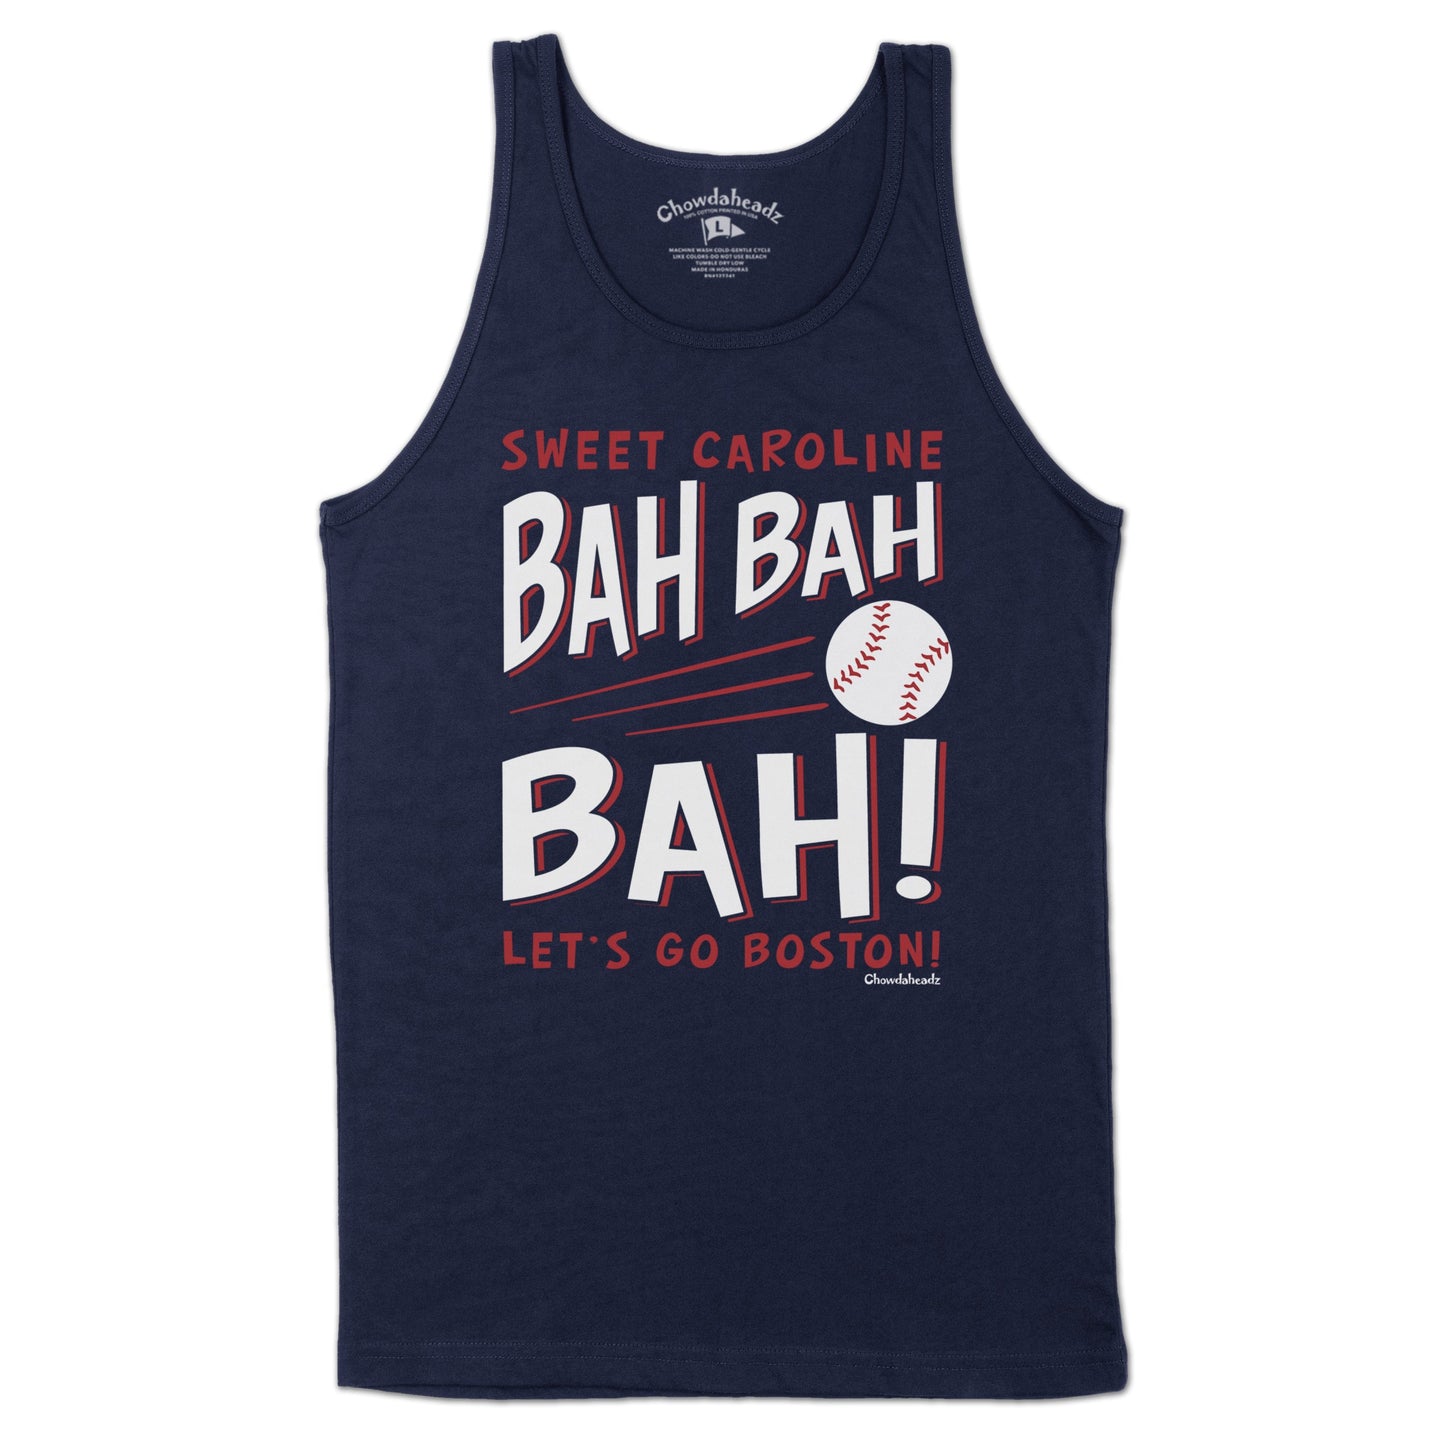 Sweet Caroline Bah Bah Bah Baseball Men's Tank Top - Chowdaheadz